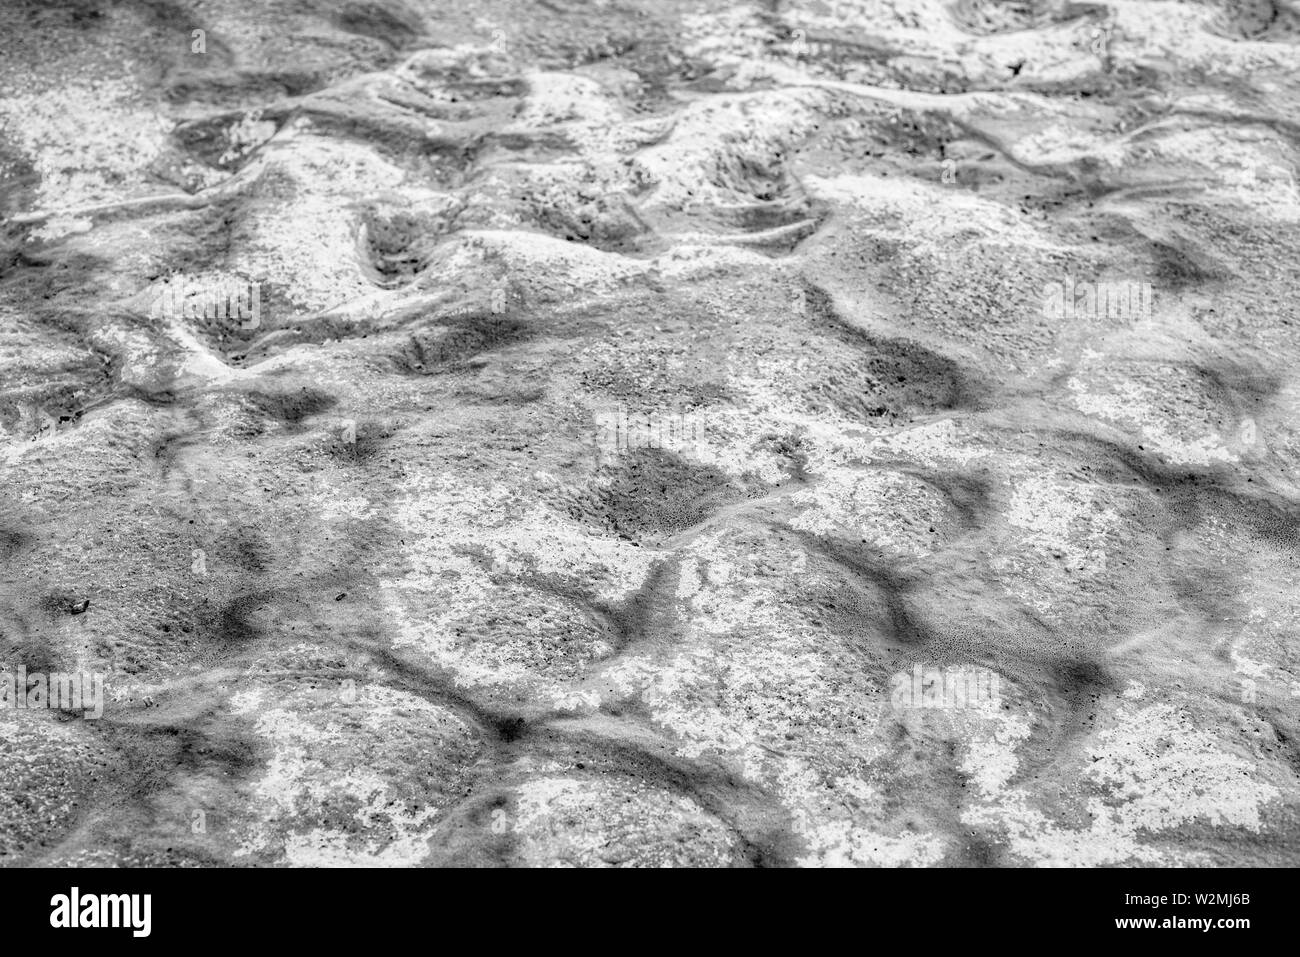 Les cristaux de sel naturel dans le terrain chaud sans vie sur le lac salé. Baskunchak La Russie. Région d'Astrakhan. Banque D'Images